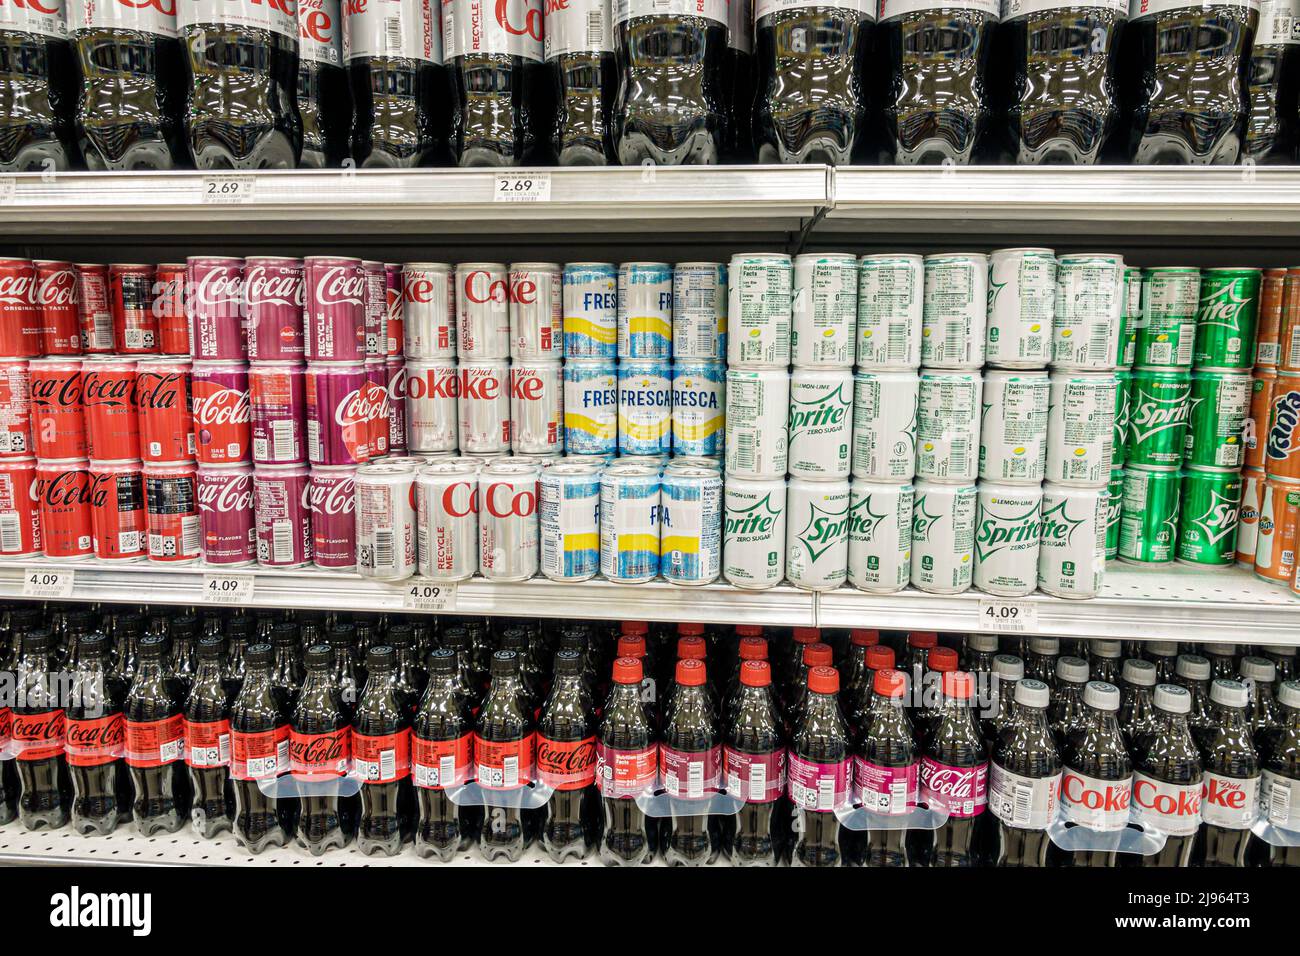 Miami Beach Florida,Publix negozio di alimentari supermercato vendita scaffali scaffali interni, prodotti Coca Cola bibite bibite bibite bibite bibite bibite Cola lattine, Foto Stock